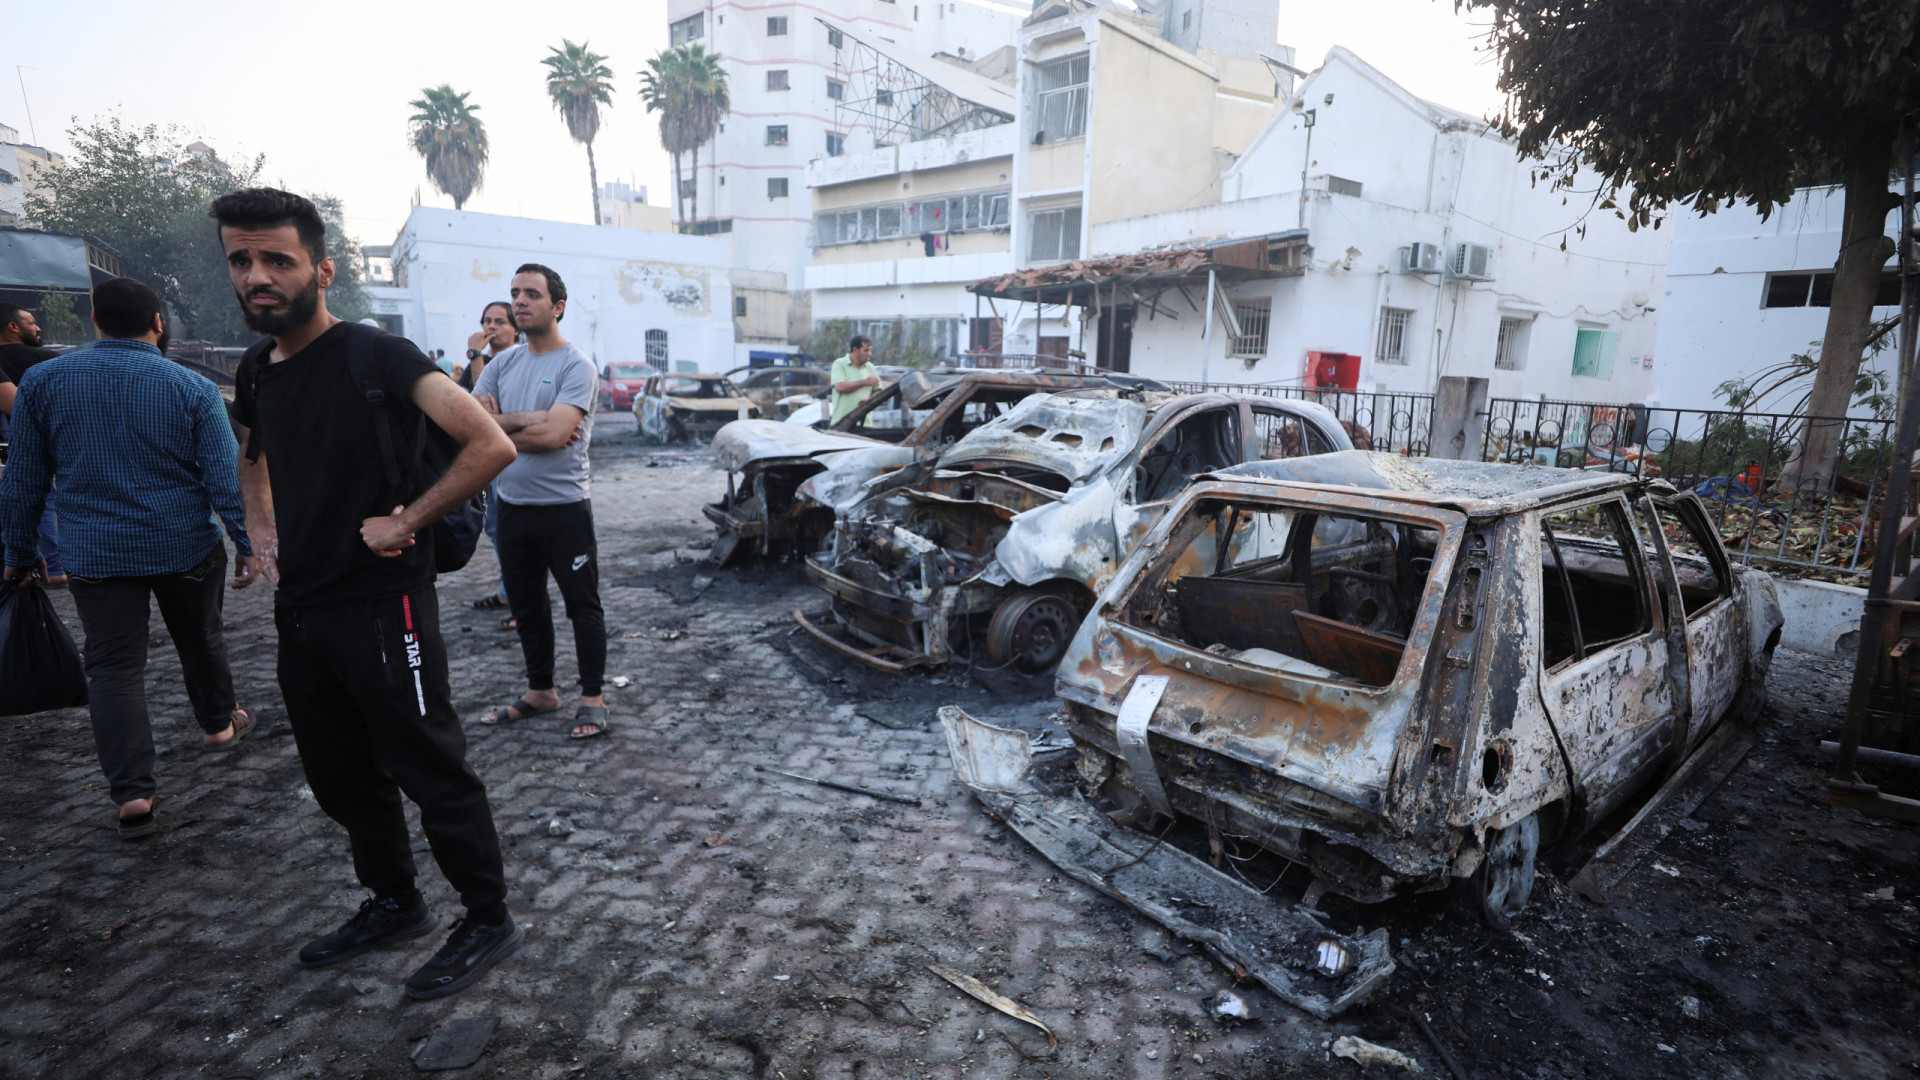  'Não existe lugar seguro', diz brasileiro encurralado em Gaza